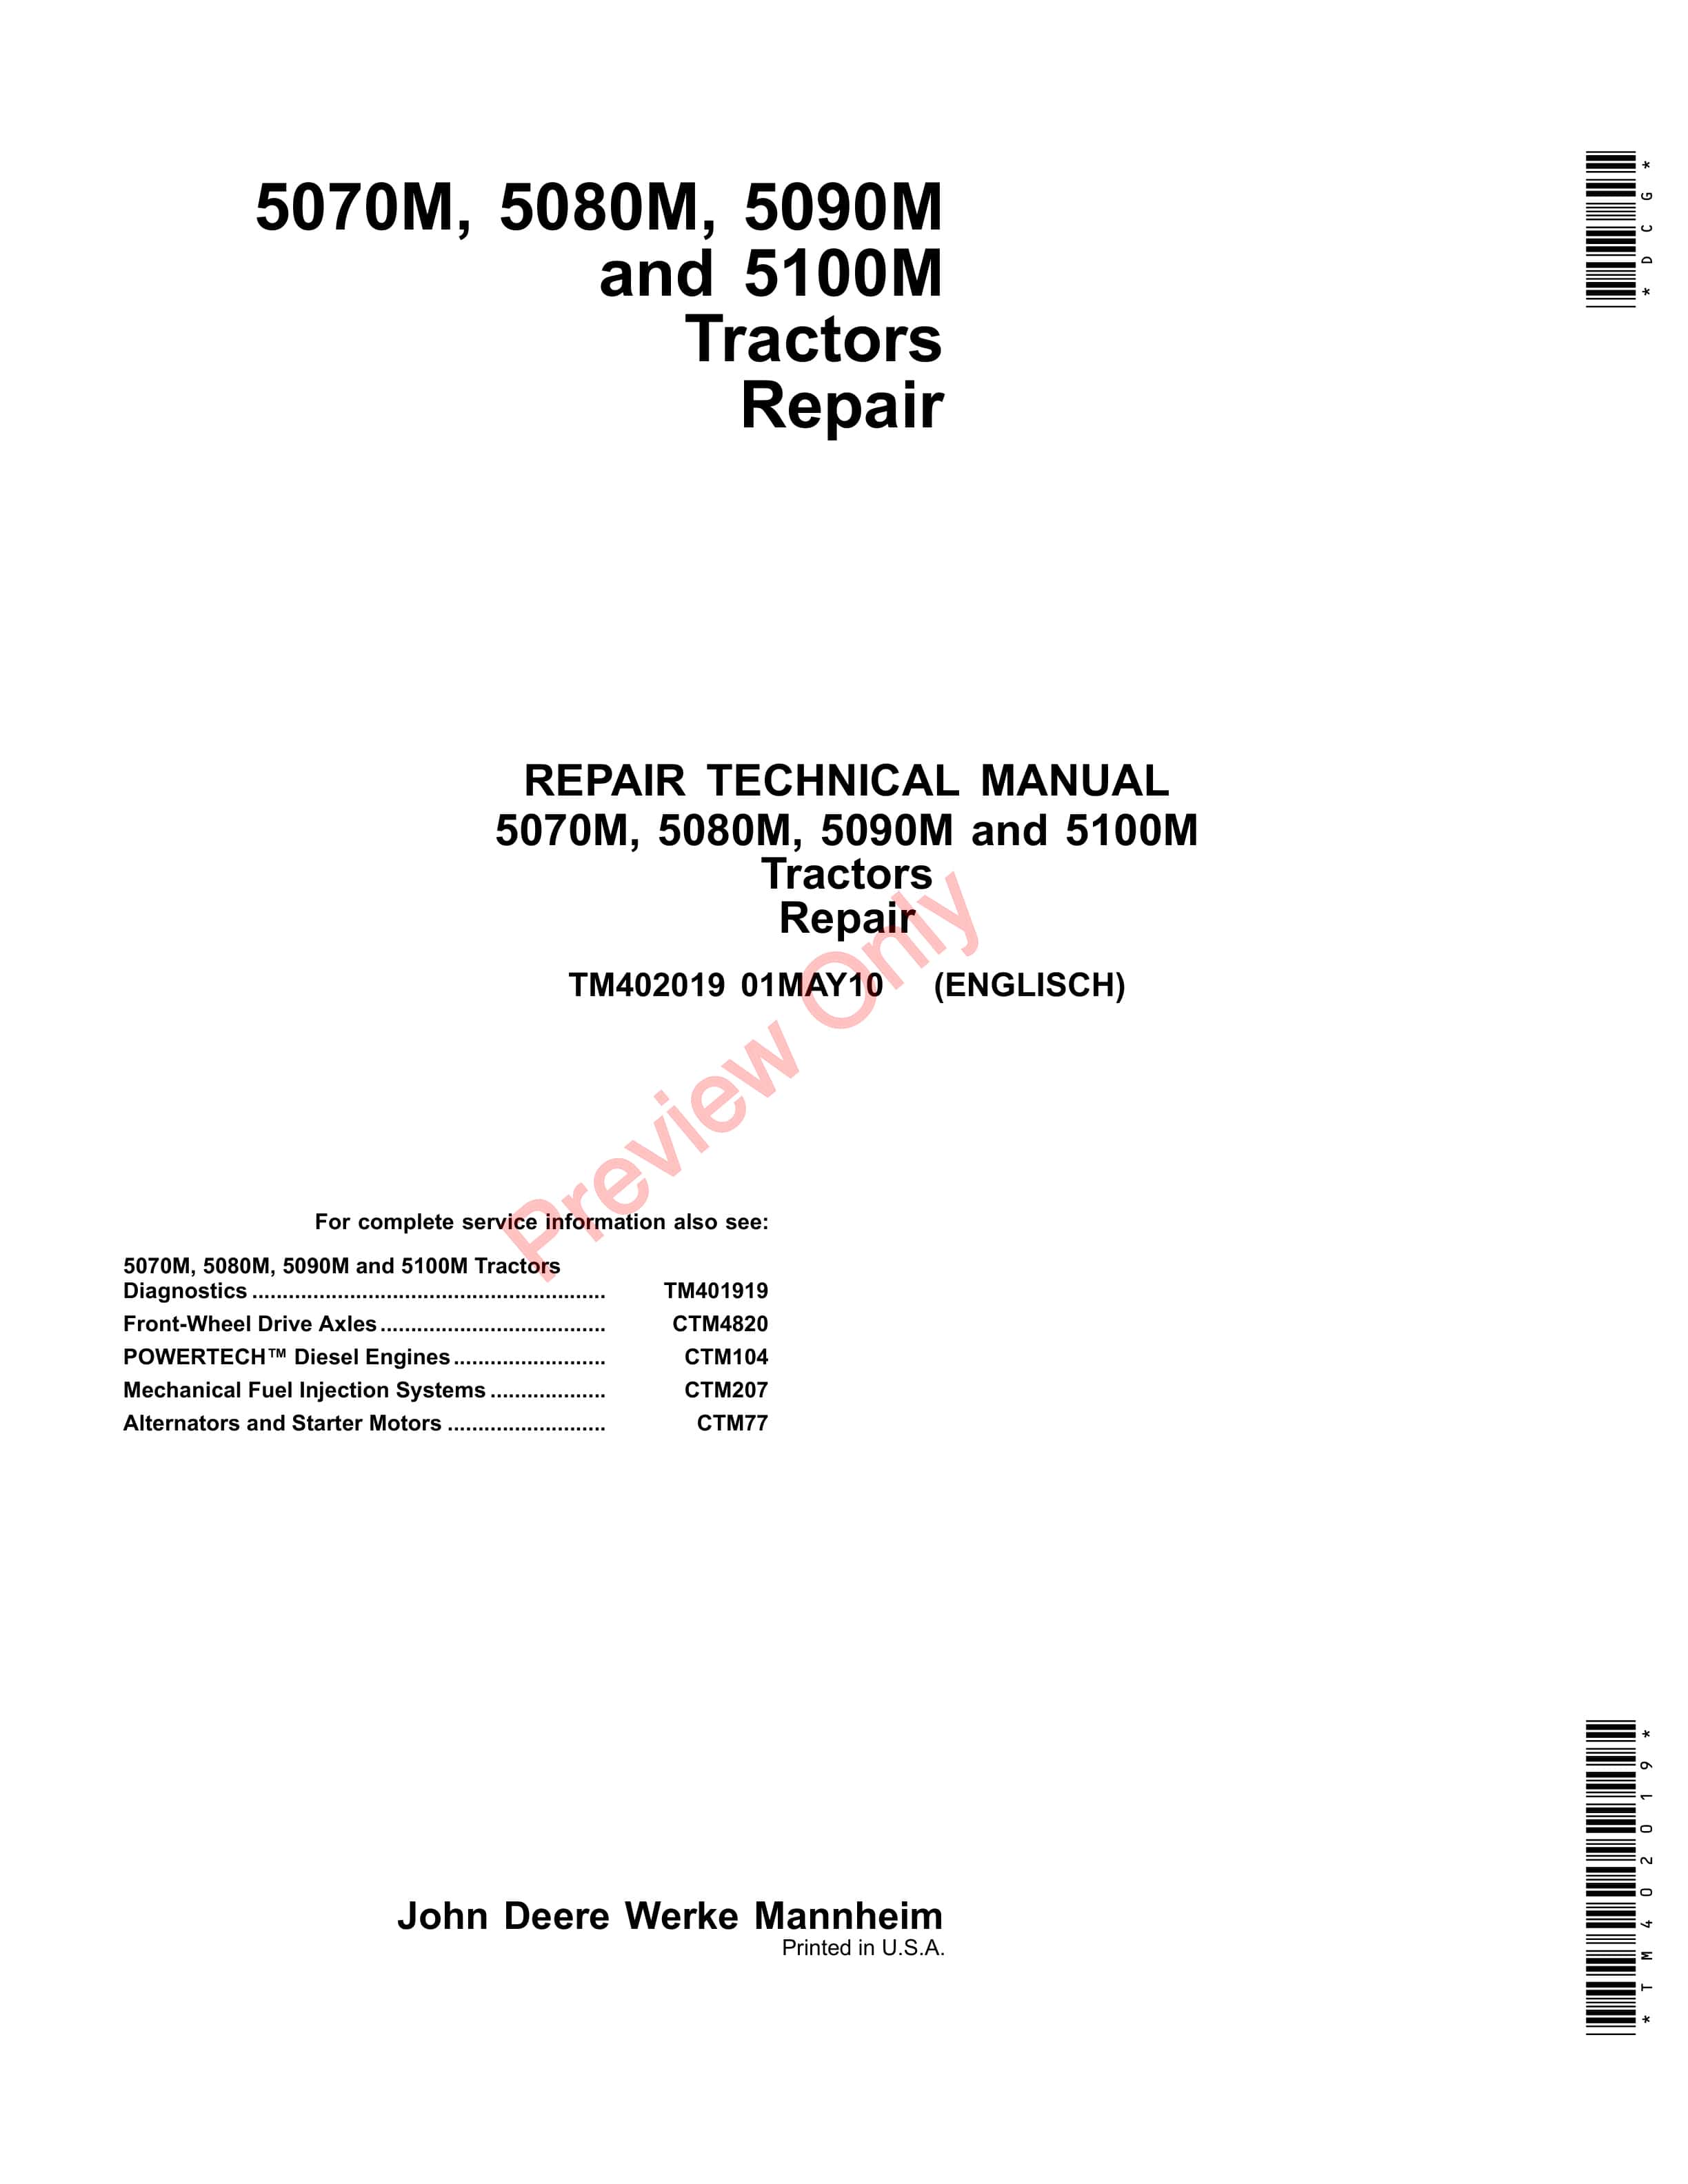 John Deere 5070M 5080M 5090M and 5100M Tractors Repair Technical Manual TM402019 01MAY10 1